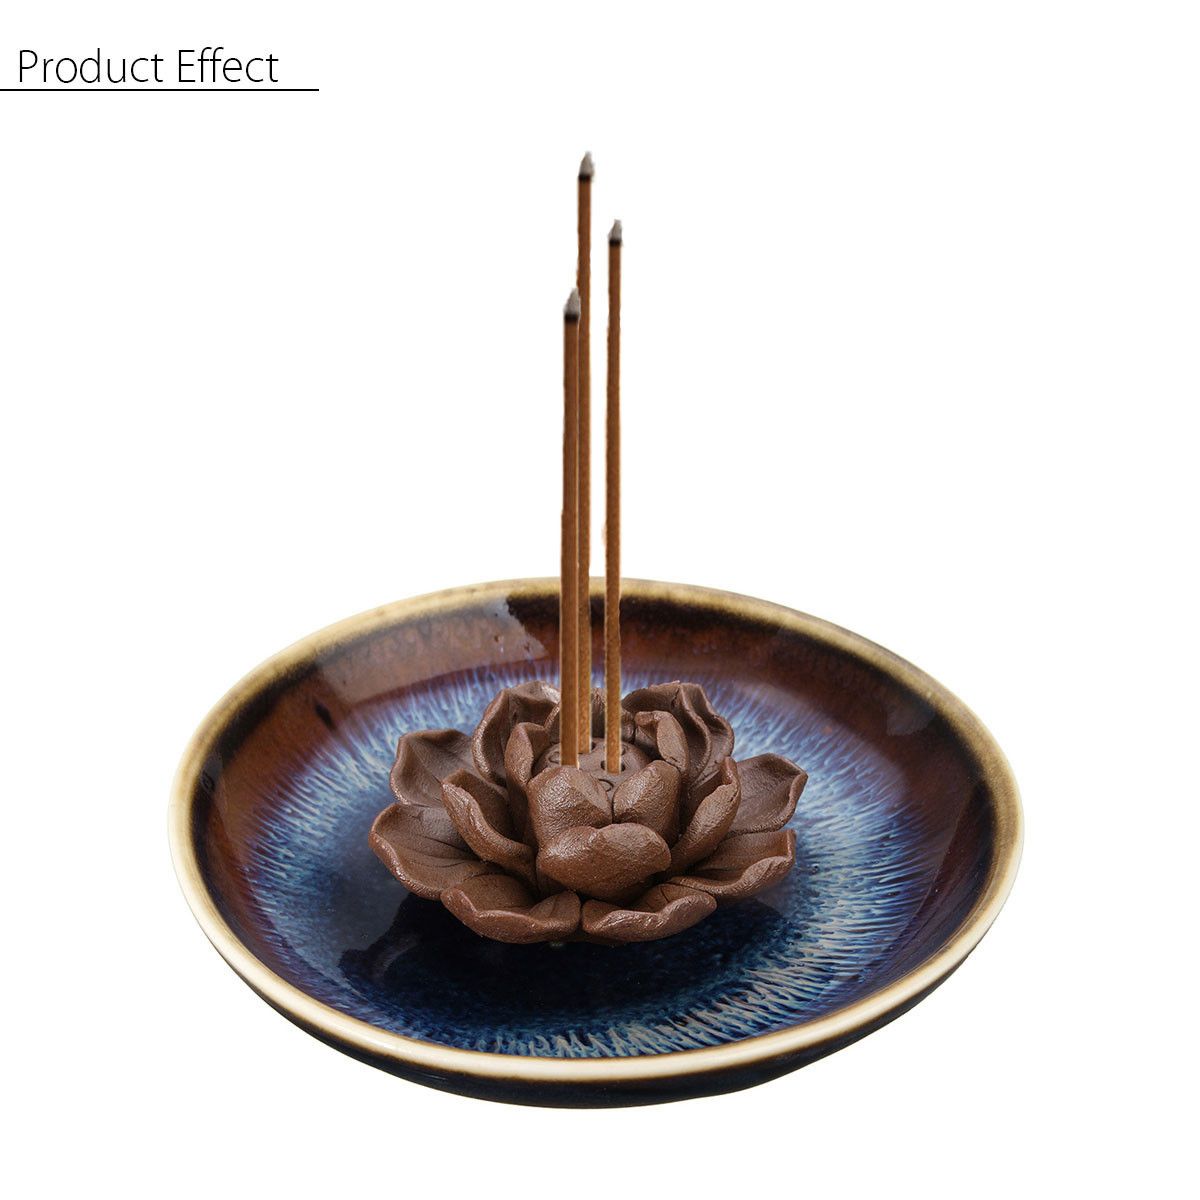 Ceramic-Incense-Burner-Holder-Burner-Lotus-Plate-Censer-Home-Fragrances-3-Incense-Holes-1470273